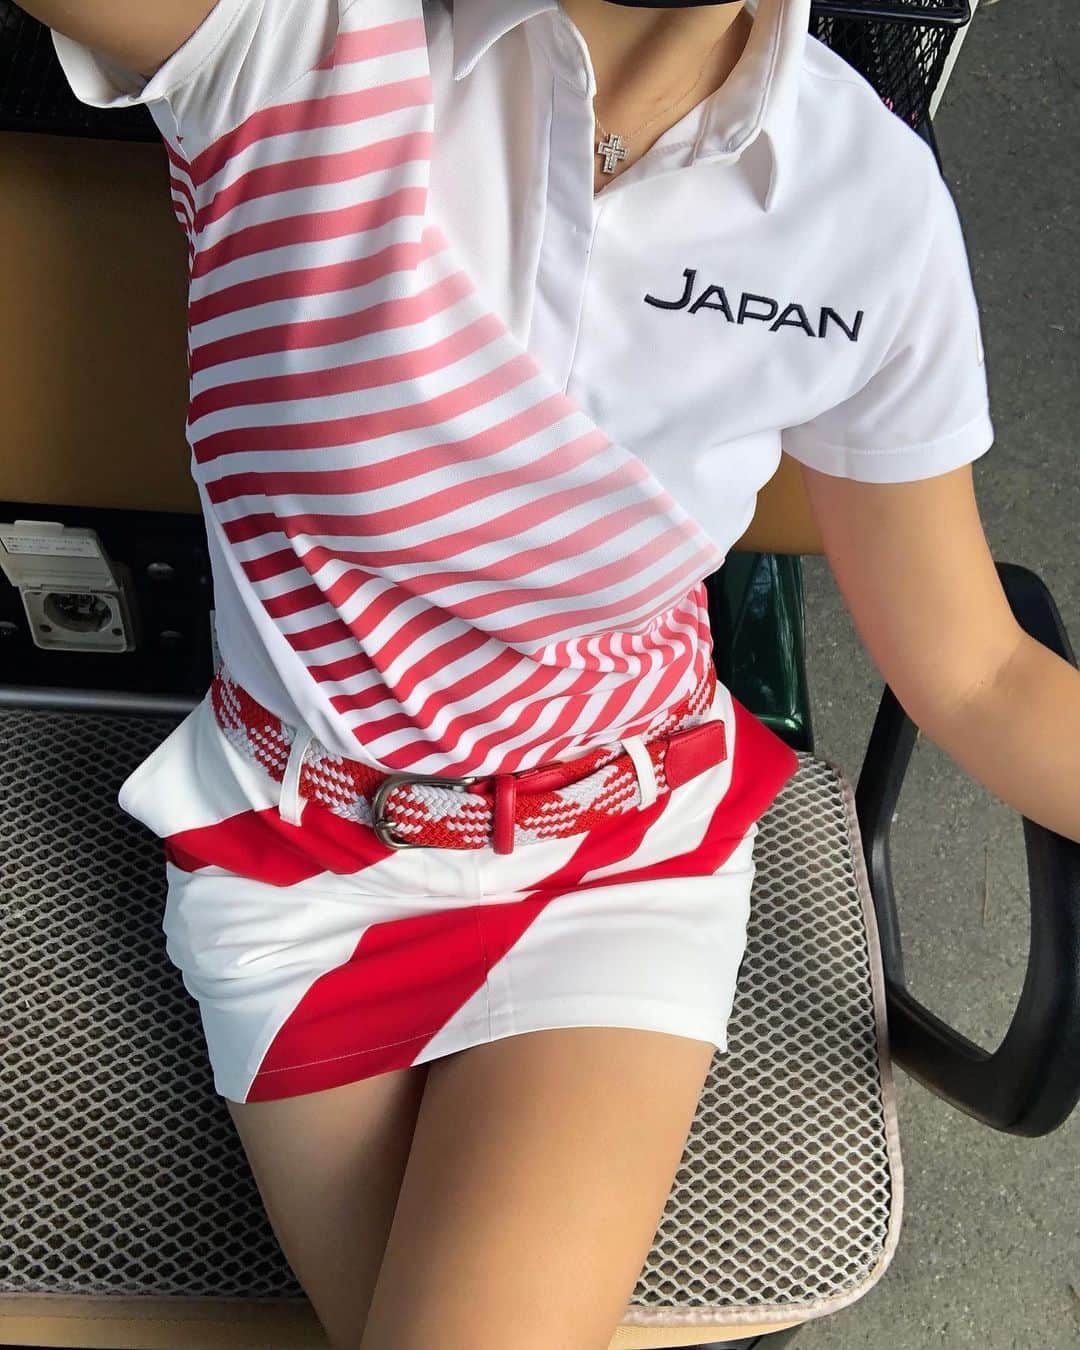 Erinaのインスタグラム：「日本代表気取り女子🇯🇵🏌️‍♀️ ウェアだけでも気取らせて？笑笑  着ているウェアは　@descentegolf ⛳️JAPAN NATIONAL TEAM レプリカモデル⛳️ ゴルフ日本代表ウェア🎽 日本のゴルフ界も盛り上がってきてるし日本代表選手とお揃いのウェア着て応援しましょー📣🎌  これ着てたらやたら声かけられた件。笑笑  #ゴルフ#ゴルフ男子#ゴルフ女子#ゴルフスイング#ゴルフファッション#ゴルフレッスン#ゴルフ好き#ゴルフ場#ゴルフウェア#ゴルフコーデ#ゴルフ練習#ゴルフ三昧#ゴルフ仲間#ラウンド#ゴルフバカ#ニアピン#ドラコン#ゴル女#ゴルファー#ゴルフ中毒#エンジョイゴルフ#ごるふ#デサントゴルフ#ゴルフにも日の丸を #golf#golfer#DESCENTE#descentegolf」